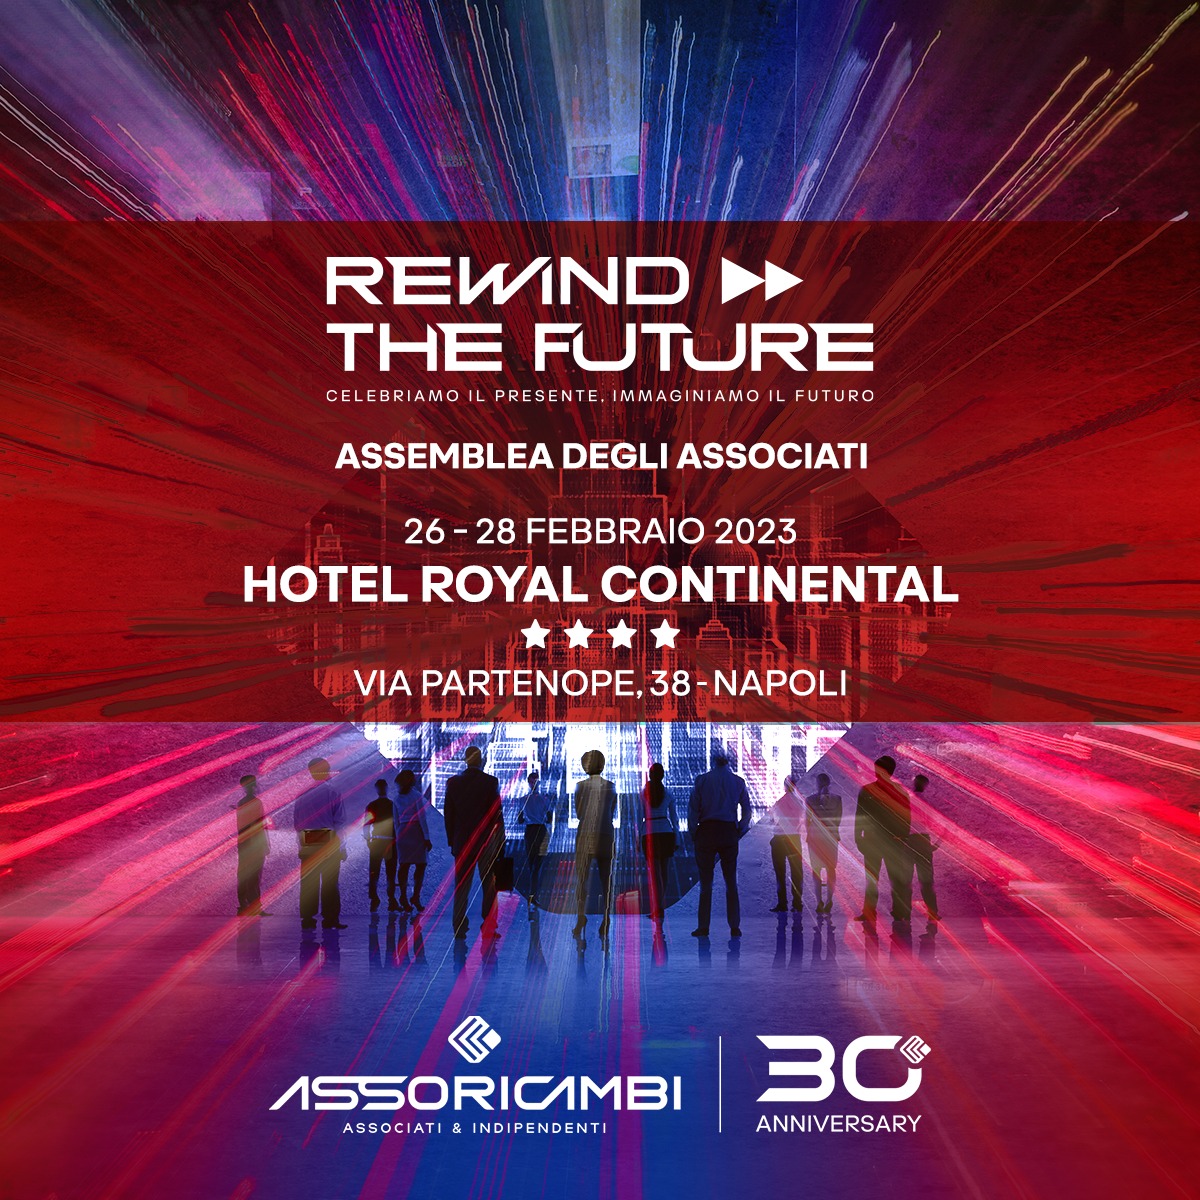 Assemblea degli Associati Asso Ricambi 2023: Rewind the future